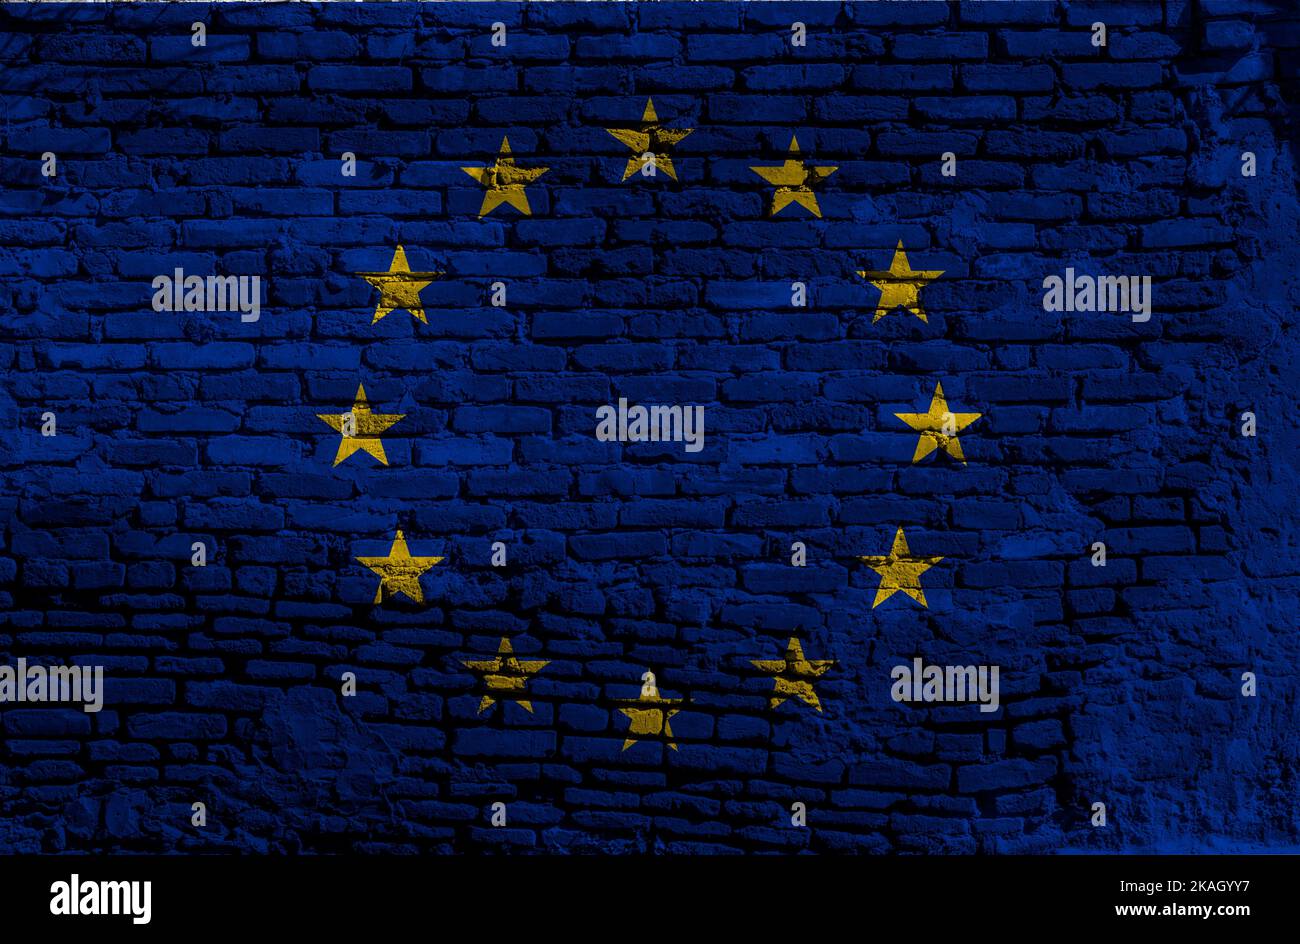 Die Europaflagge oder die Europaflagge besteht aus zwölf goldenen Sternen, die einen Kreis auf einem blauen Feld bilden. Es wurde 1955 vom Rat entworfen und angenommen Stockfoto